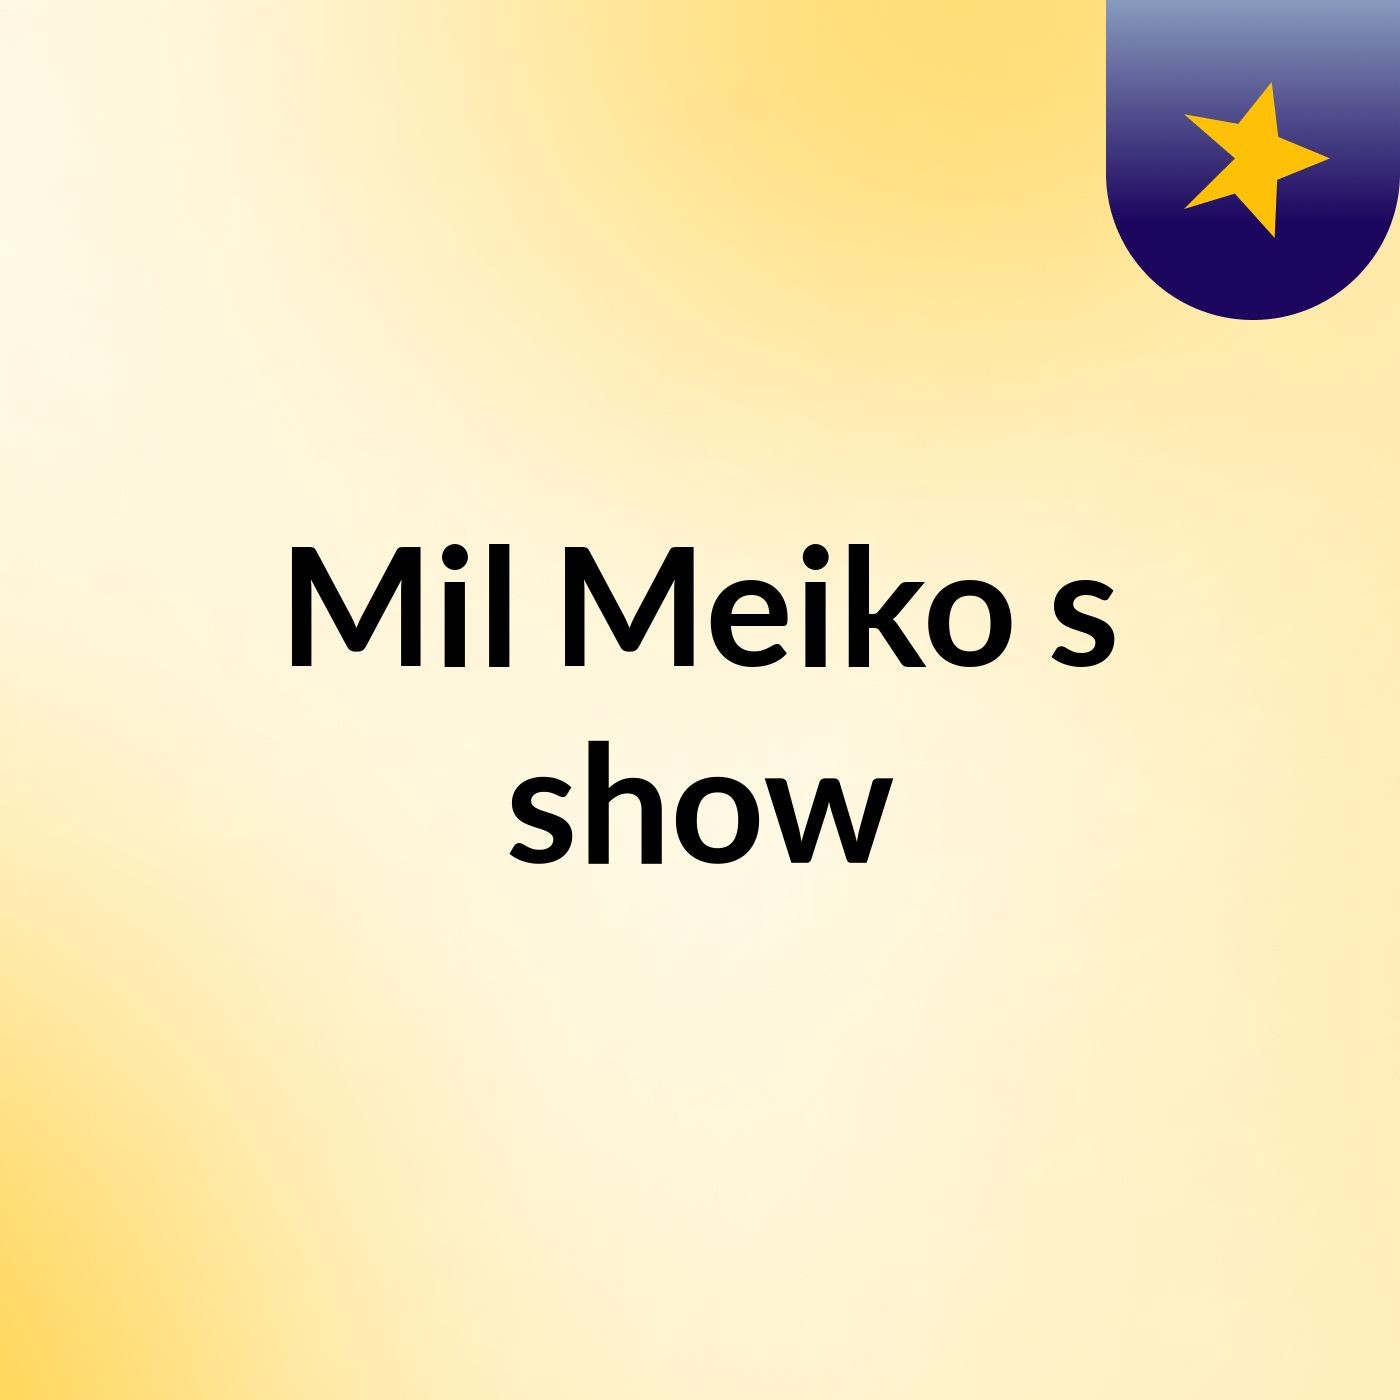 Mil Meiko's show